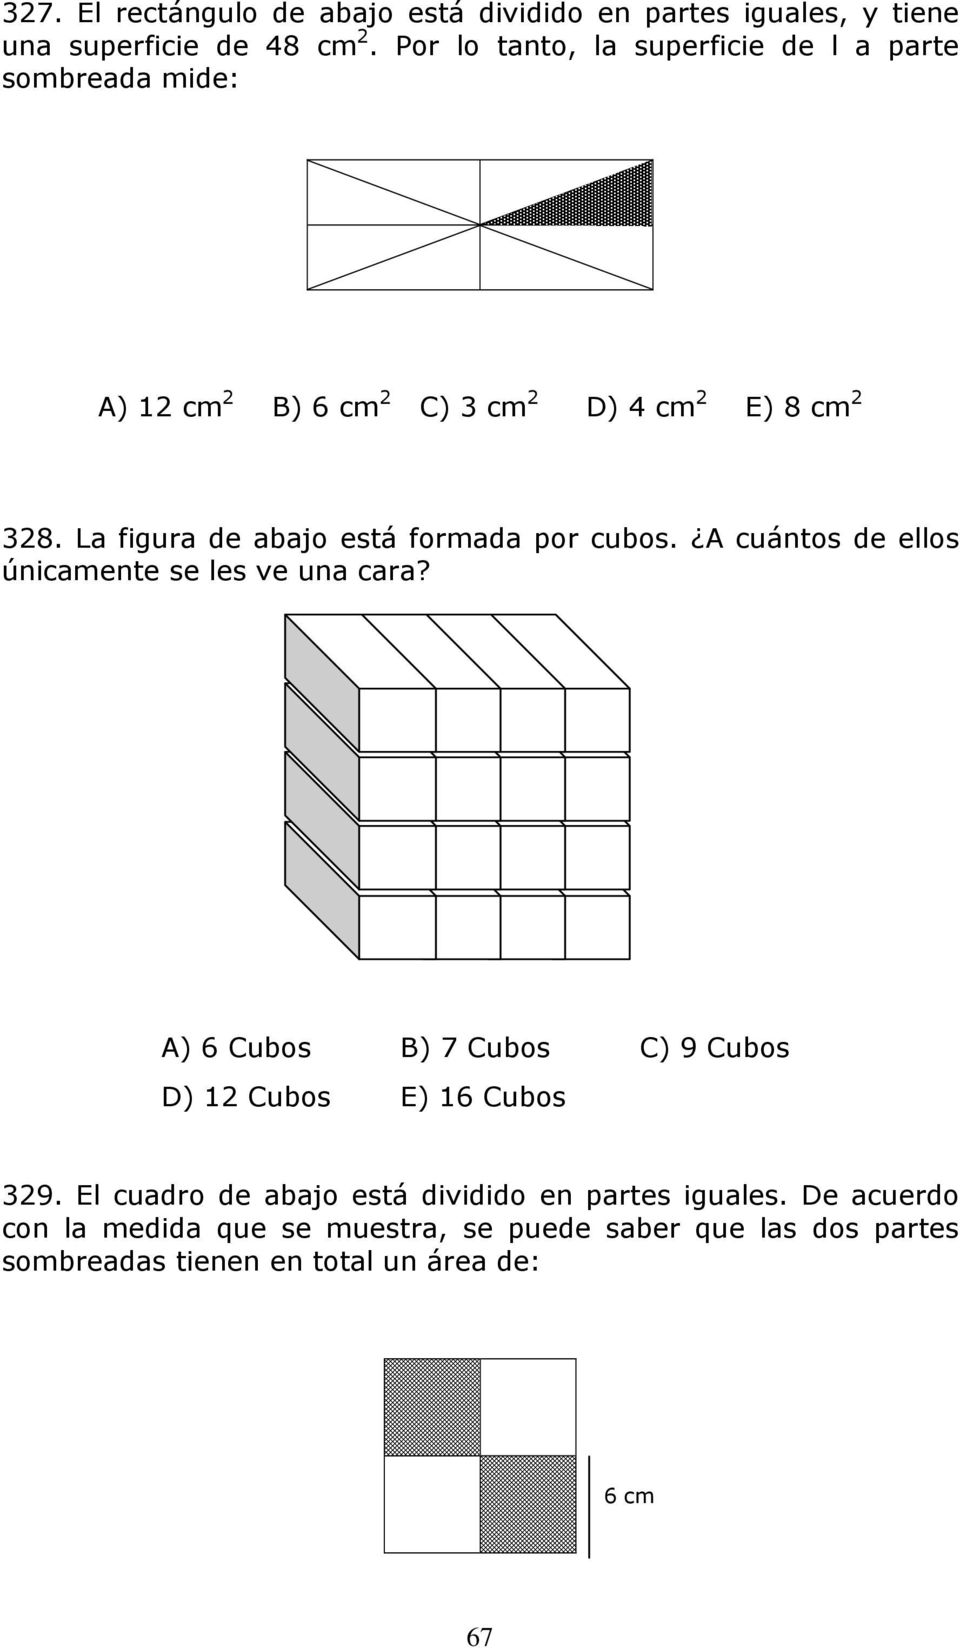 La figura de abajo está formada por cubos. A cuántos de ellos únicamente se les ve una cara?